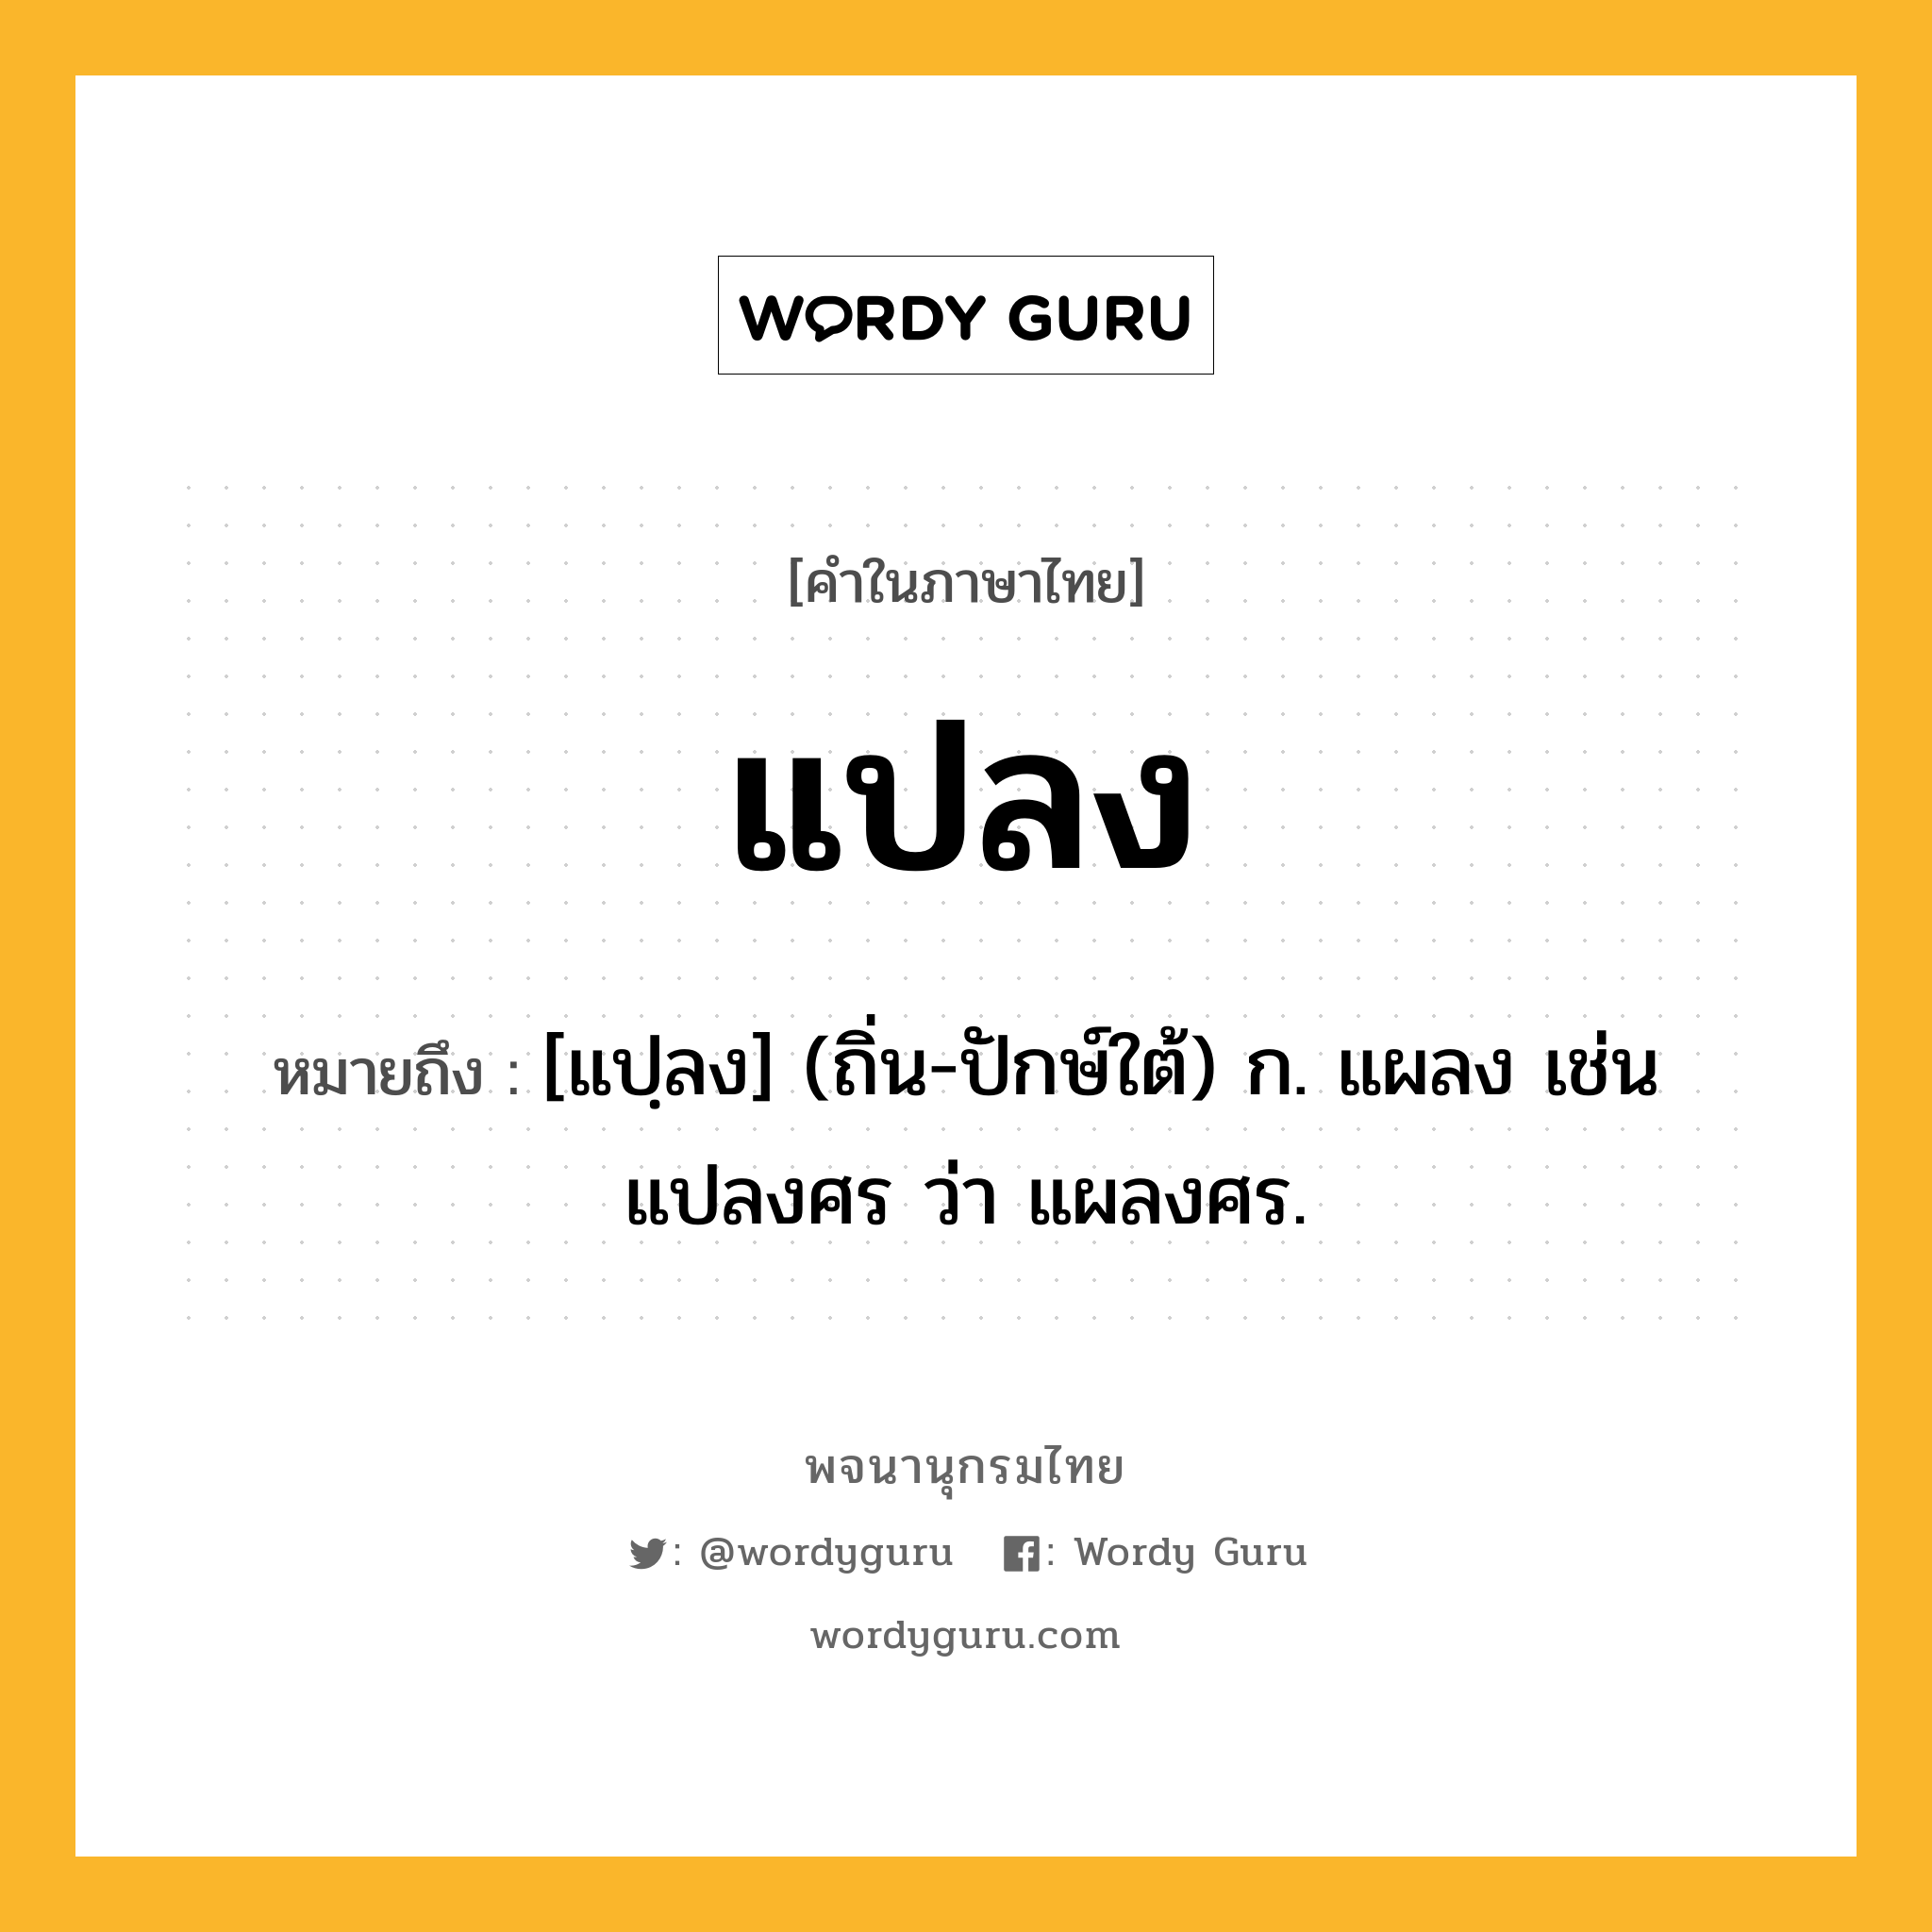 แปลง หมายถึงอะไร?, คำในภาษาไทย แปลง หมายถึง [แปฺลง] (ถิ่น-ปักษ์ใต้) ก. แผลง เช่น แปลงศร ว่า แผลงศร.